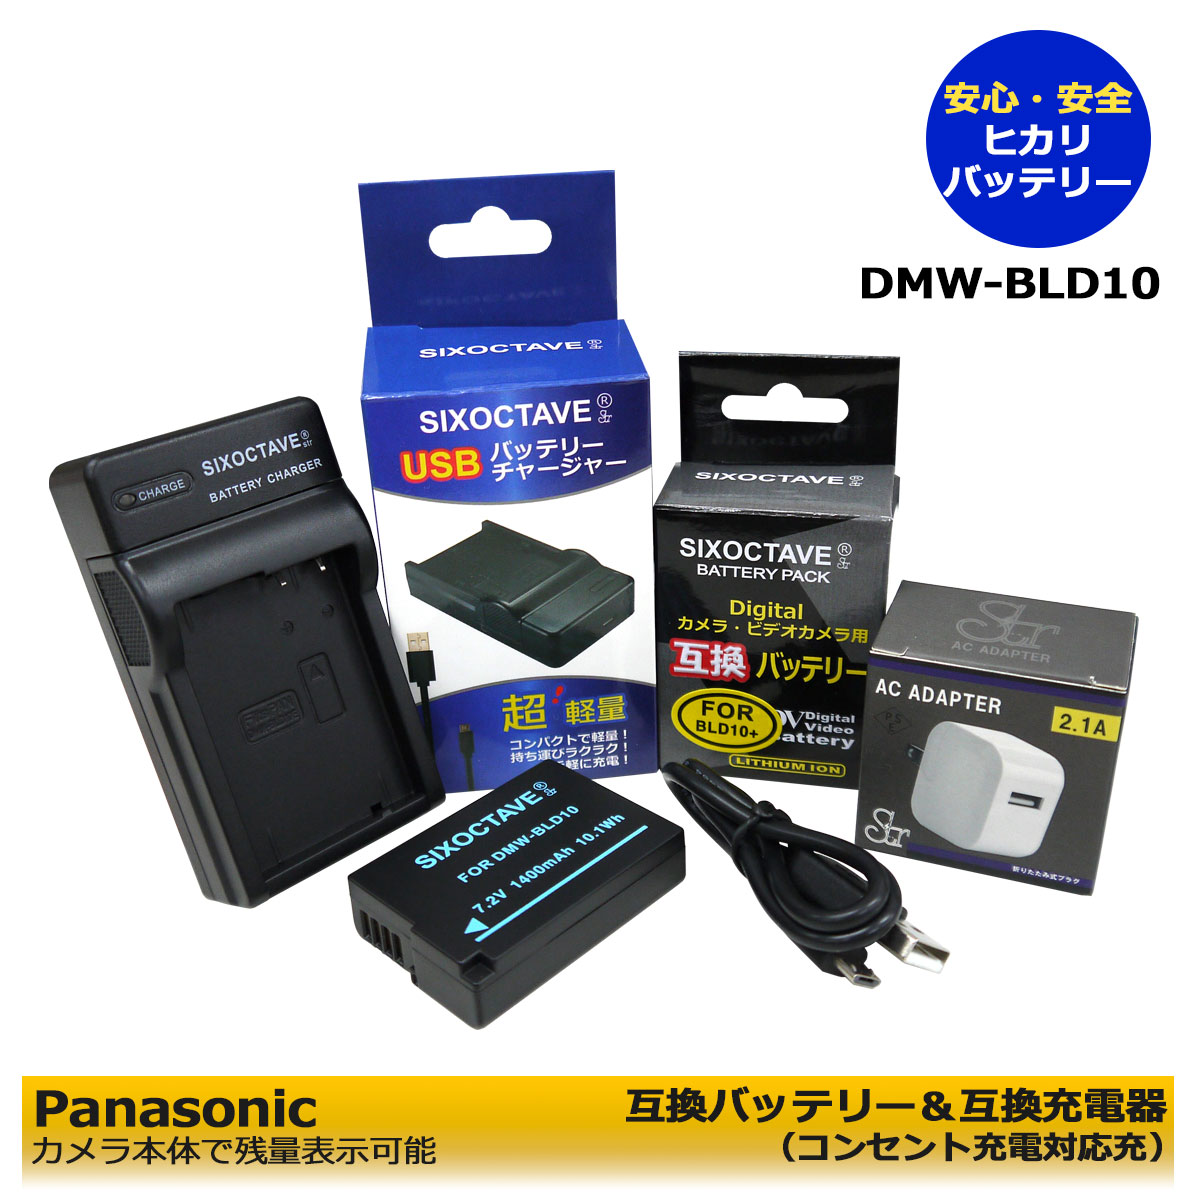 ★コンセント充電可能★ Panasonic DMW-BLD10 大容量 1400mah 互換バッテリーパック 1個 と 互換充電器 1個とACアダプター1個の 3点セット DMC-G3W-K / DMC-G3W-W / DMC-G3K / DMC-G3K-K / DMC-GF2 / DMC-GF2-K / DMC-GF2C （純正充電器で充電可能。）(A2.1)